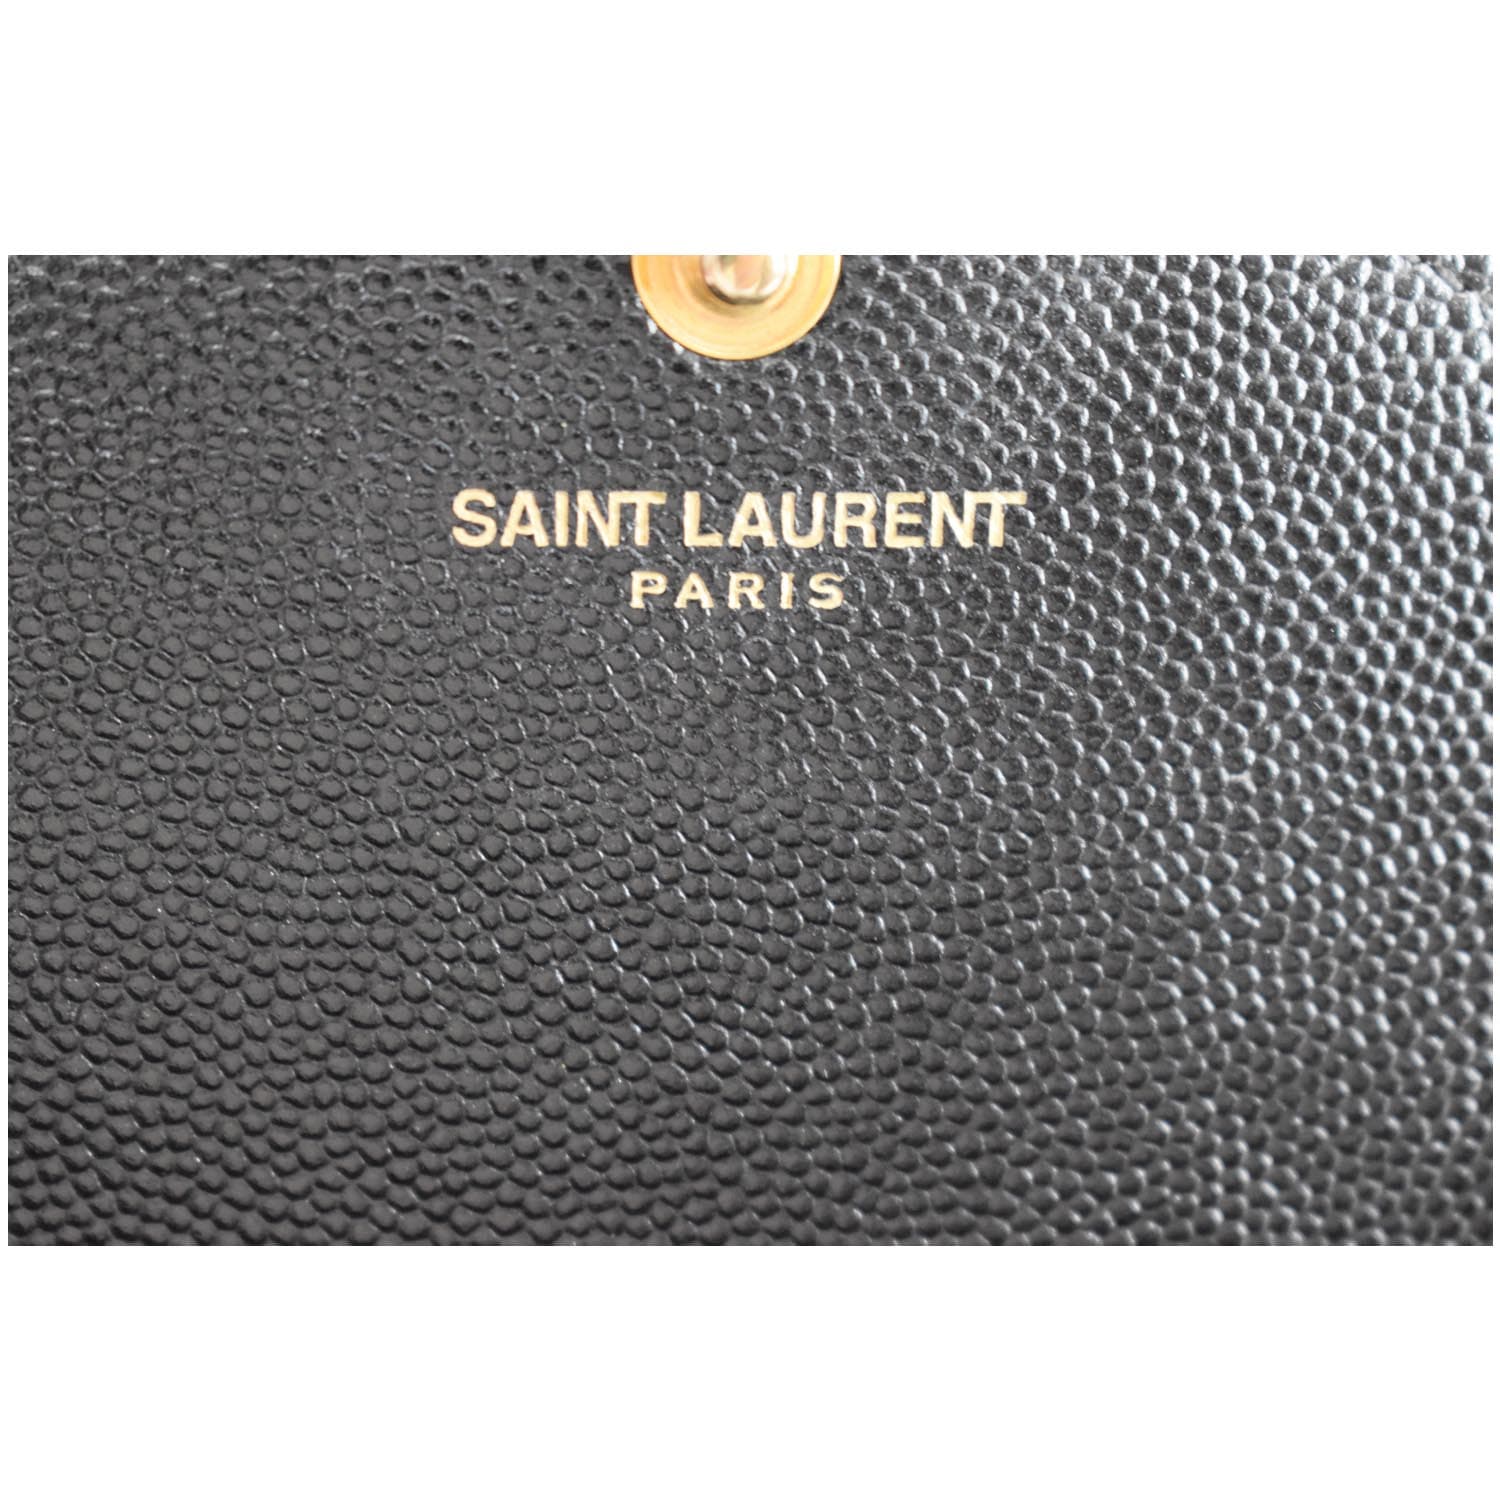 Saint Laurent Envelope Chain Wallet in Grain de Poudre Embossed Leather